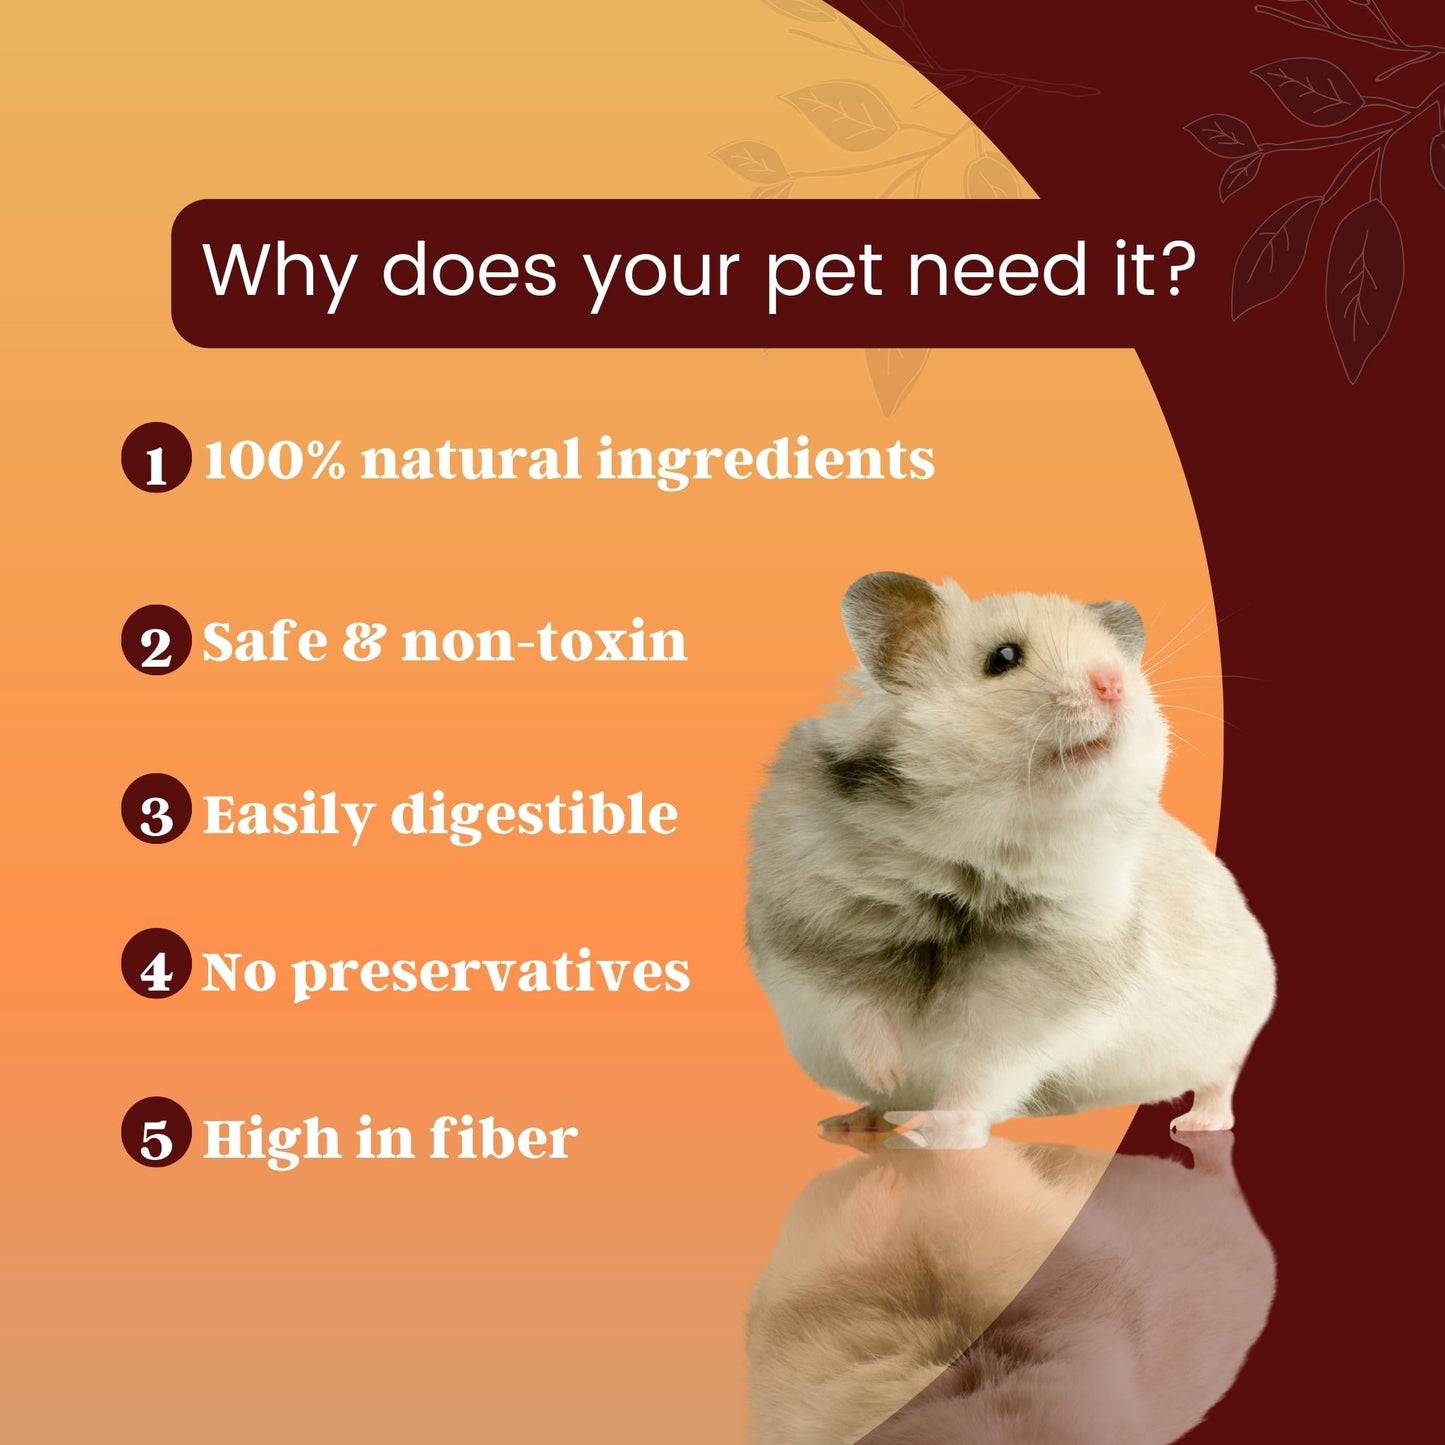 Foodie Puppies Hamster Food Pellets Highly Nutritious Diet, 1Kg